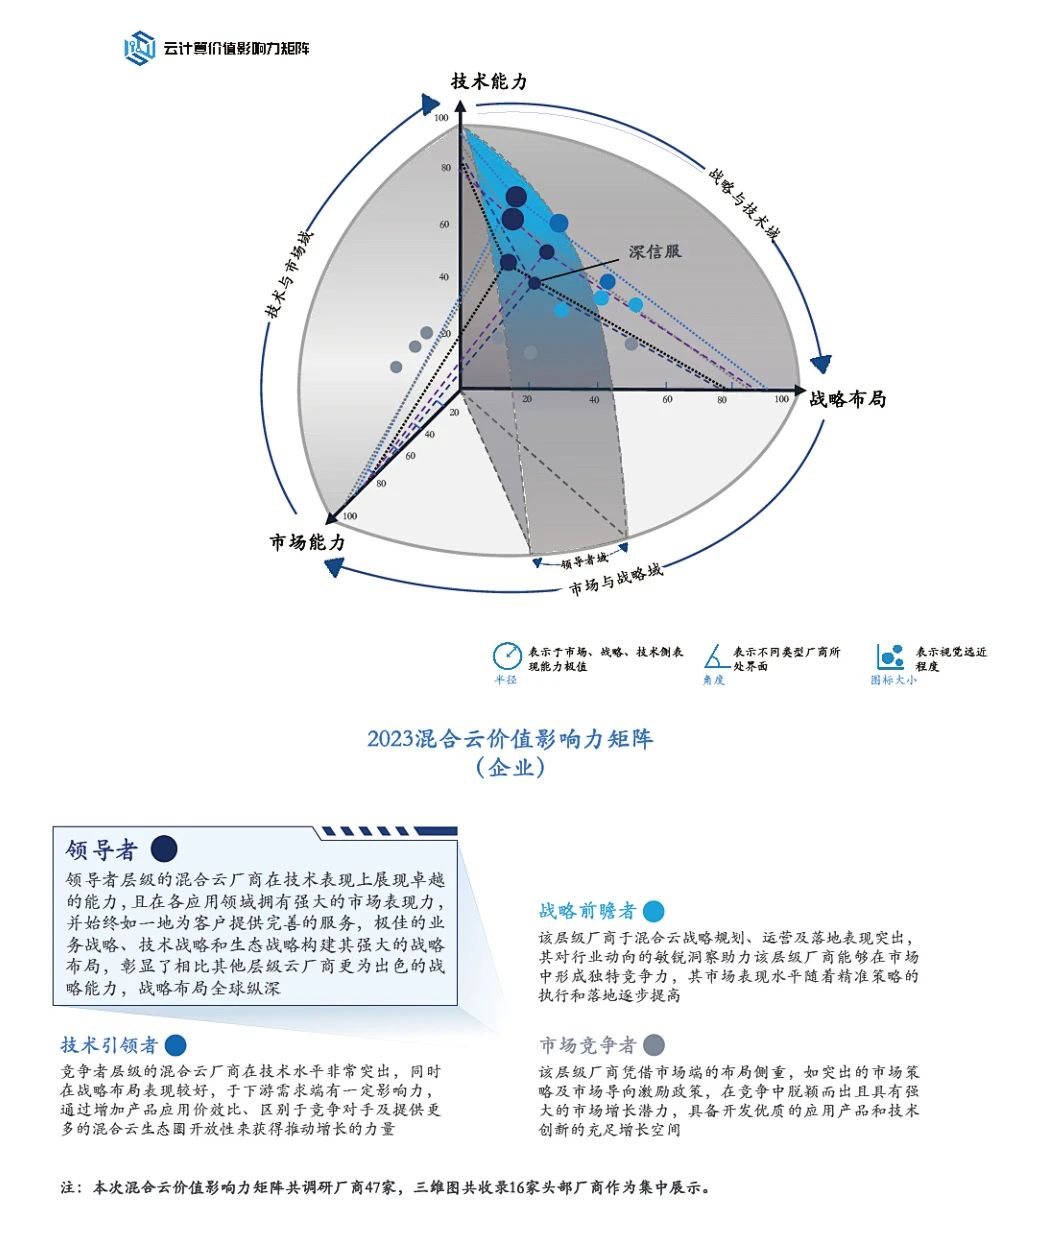 中国信通院&沙利文《2023中国混合云价值影响力评估报告》